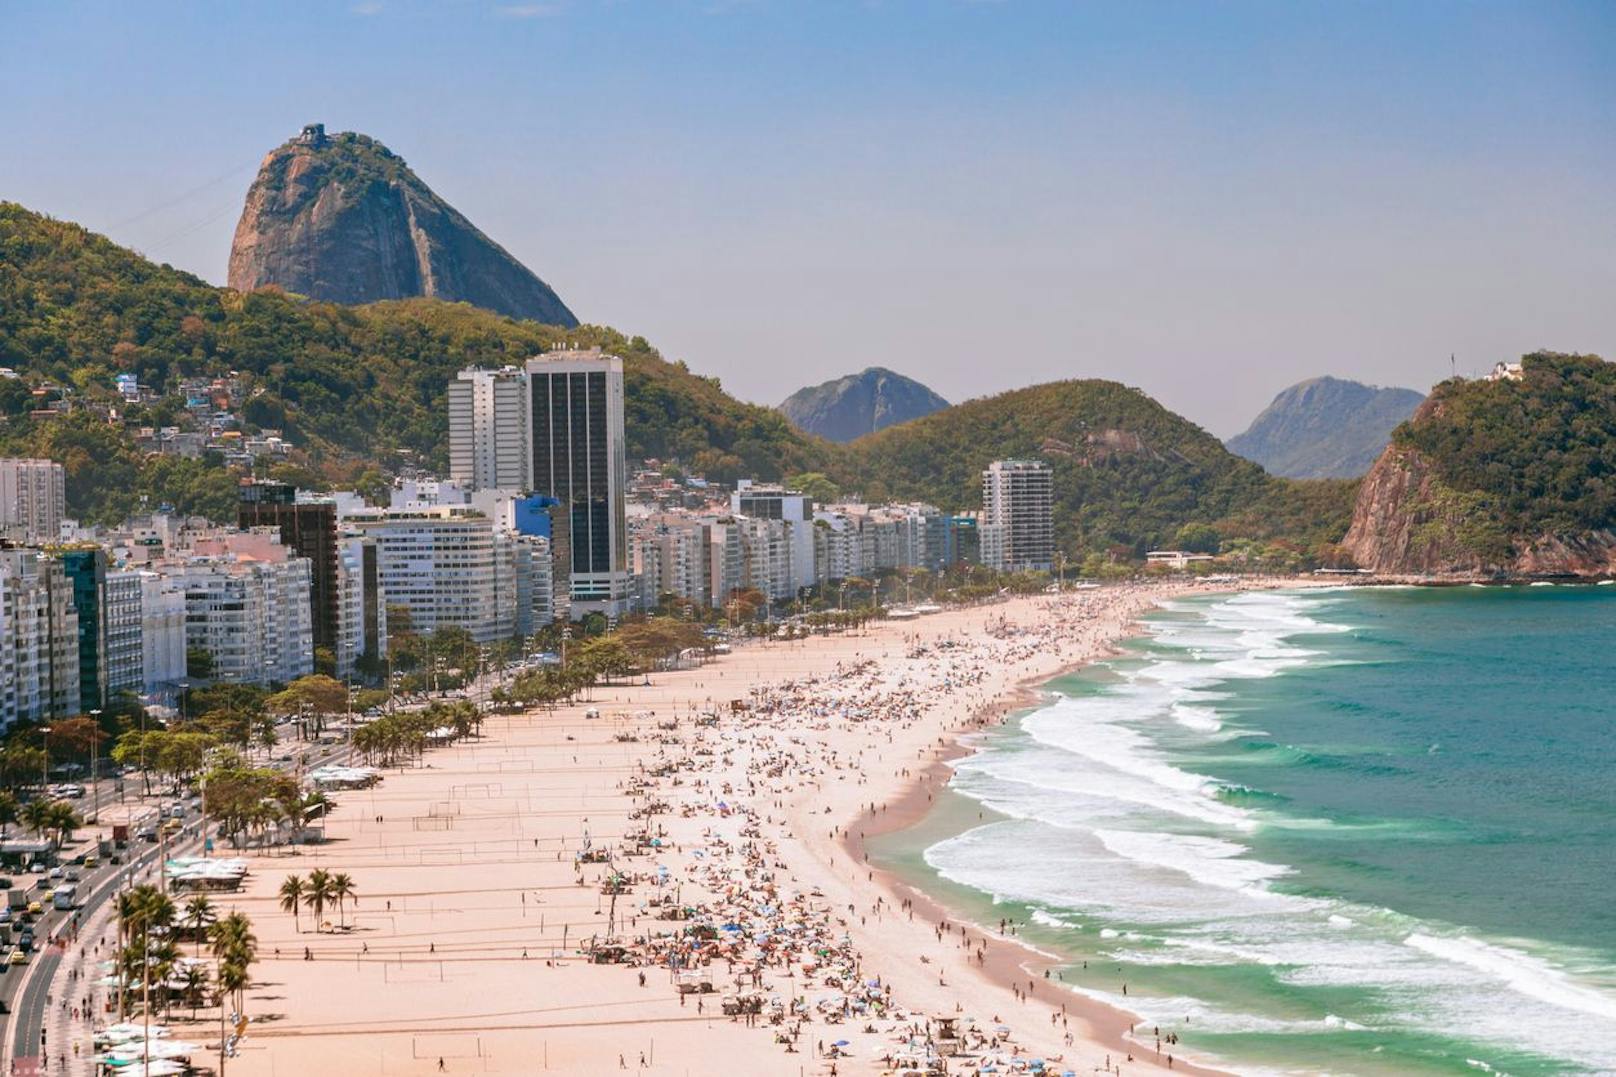 <strong>Platz 4: Copacabana, Brasilien!</strong> Die Copacabana in Rio de Janeiro ist eine pulsierende Mischung aus brasilianischem Leben, bekannt für ihre geschäftige, traditionelle Atmosphäre. Hier gebe es eine Vielzahl von Bars, Kneipen, Straßenfesten und Geschäften für jeden Geschmack und Geldbeutel, heißt es. Der eigentliche Charme der Copacabana liegt jedoch in den atemberaubenden Stränden und dem Blick auf die Küste, die die Hauptattraktion für Besucher darstellen.